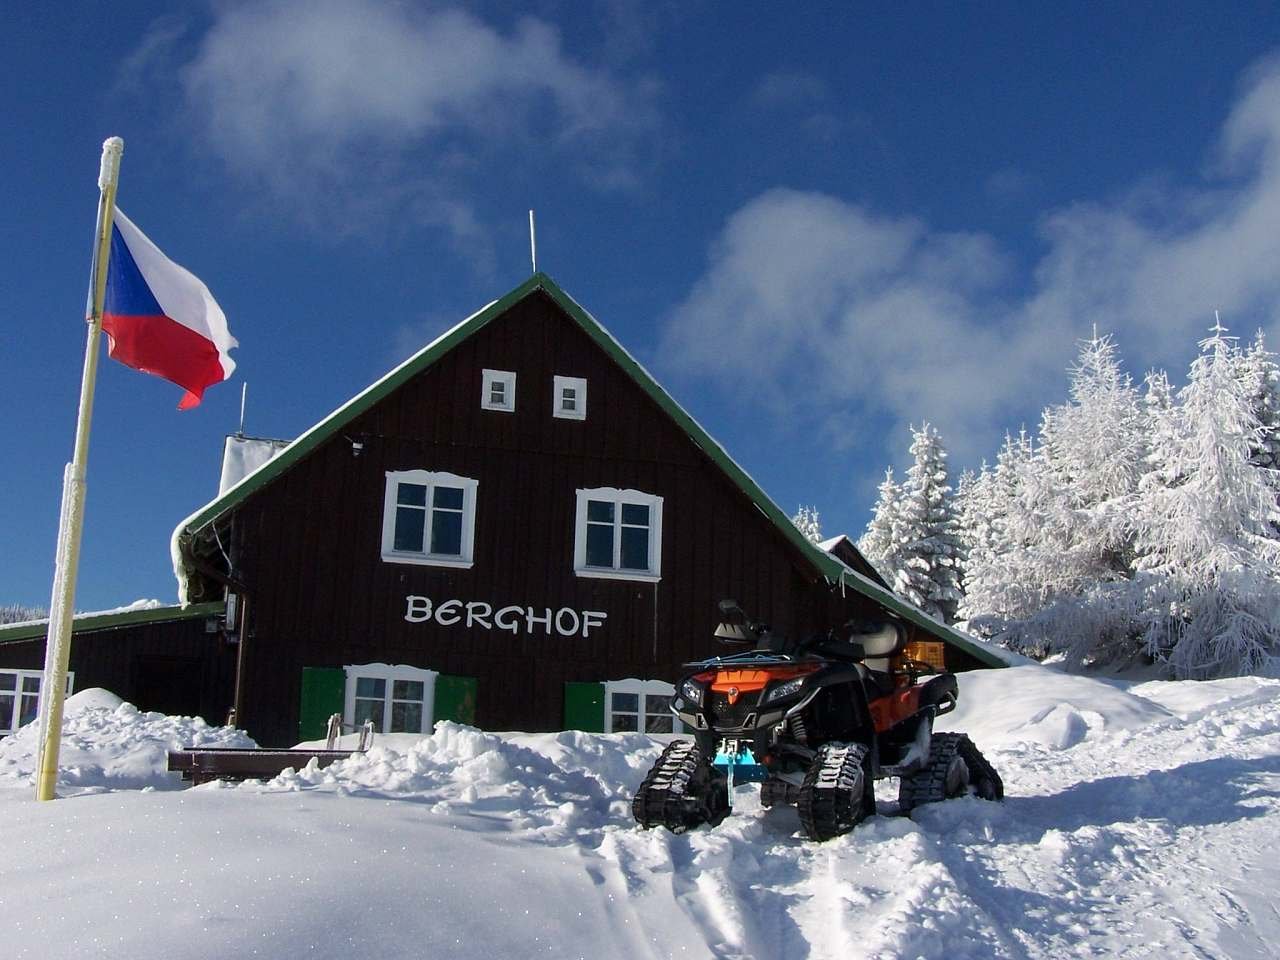 Berghof hegyi kunyhó